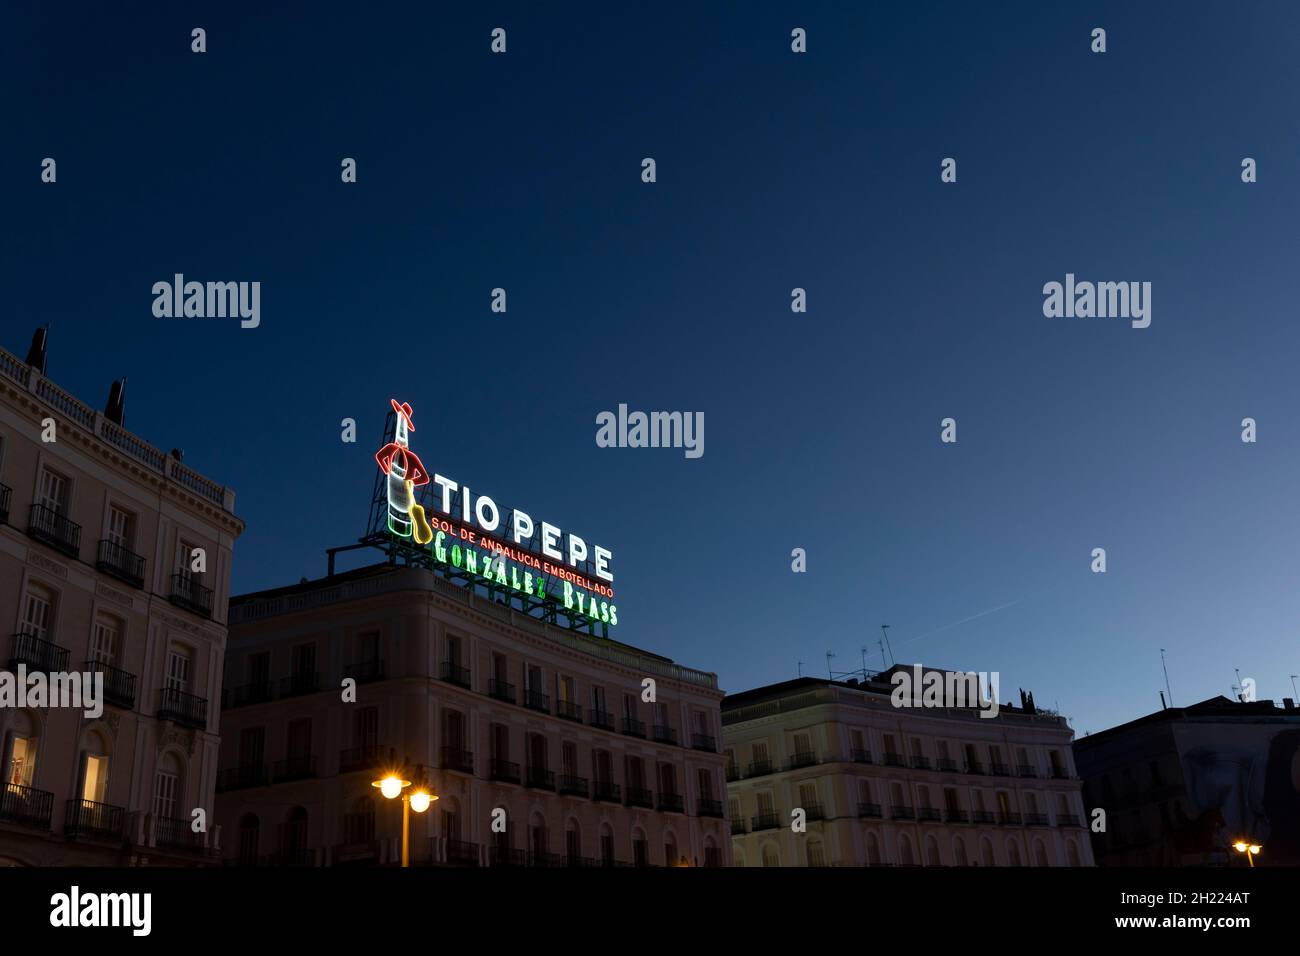 Das Wahrzeichen von Tío Pepe, eine Werbung für Tío Pepe Sherry, beleuchtet die Puerta del Sol bei Sonnenuntergang in Madrid, Spanien. Stockfoto